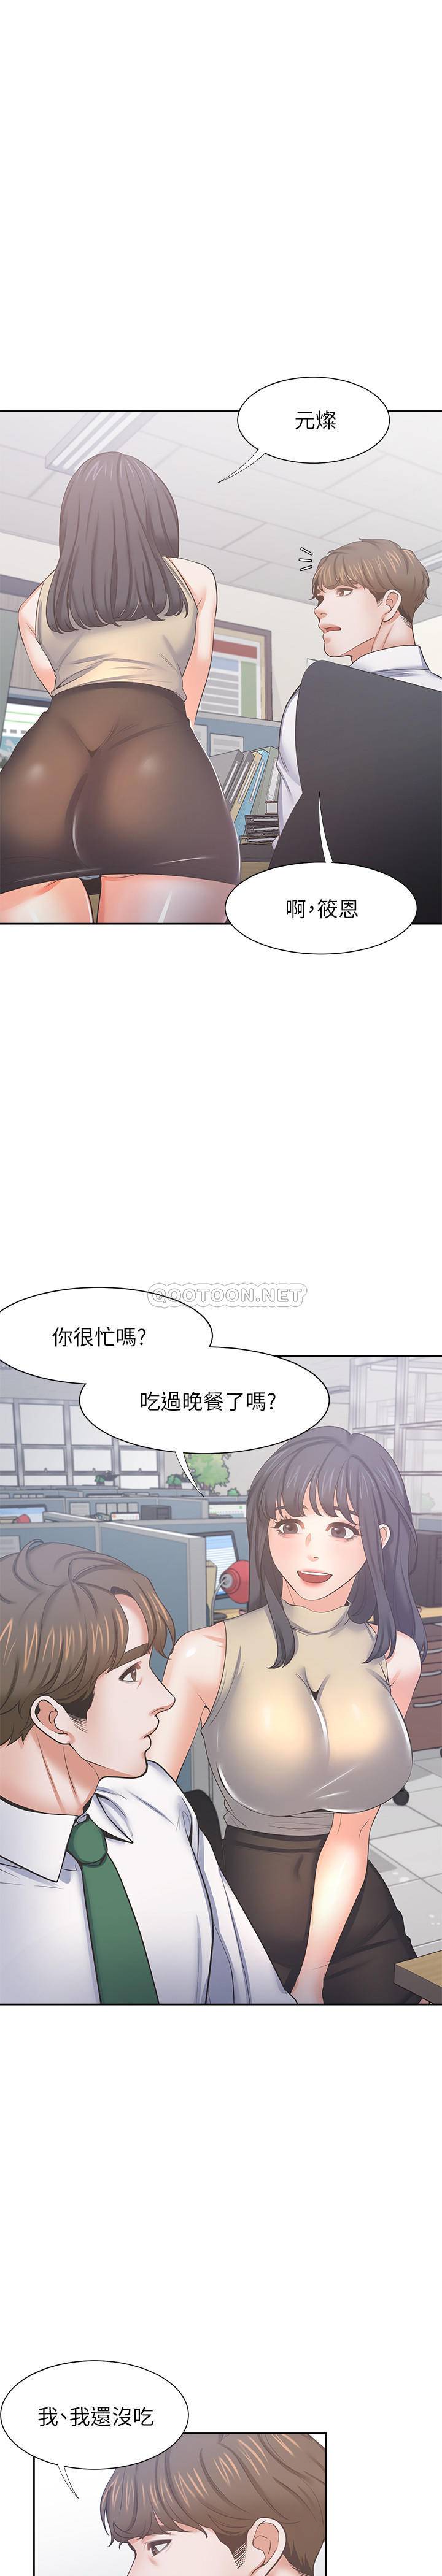 韩国污漫画 愛火難耐 第42话-被情趣用品吓到的芝熙 24